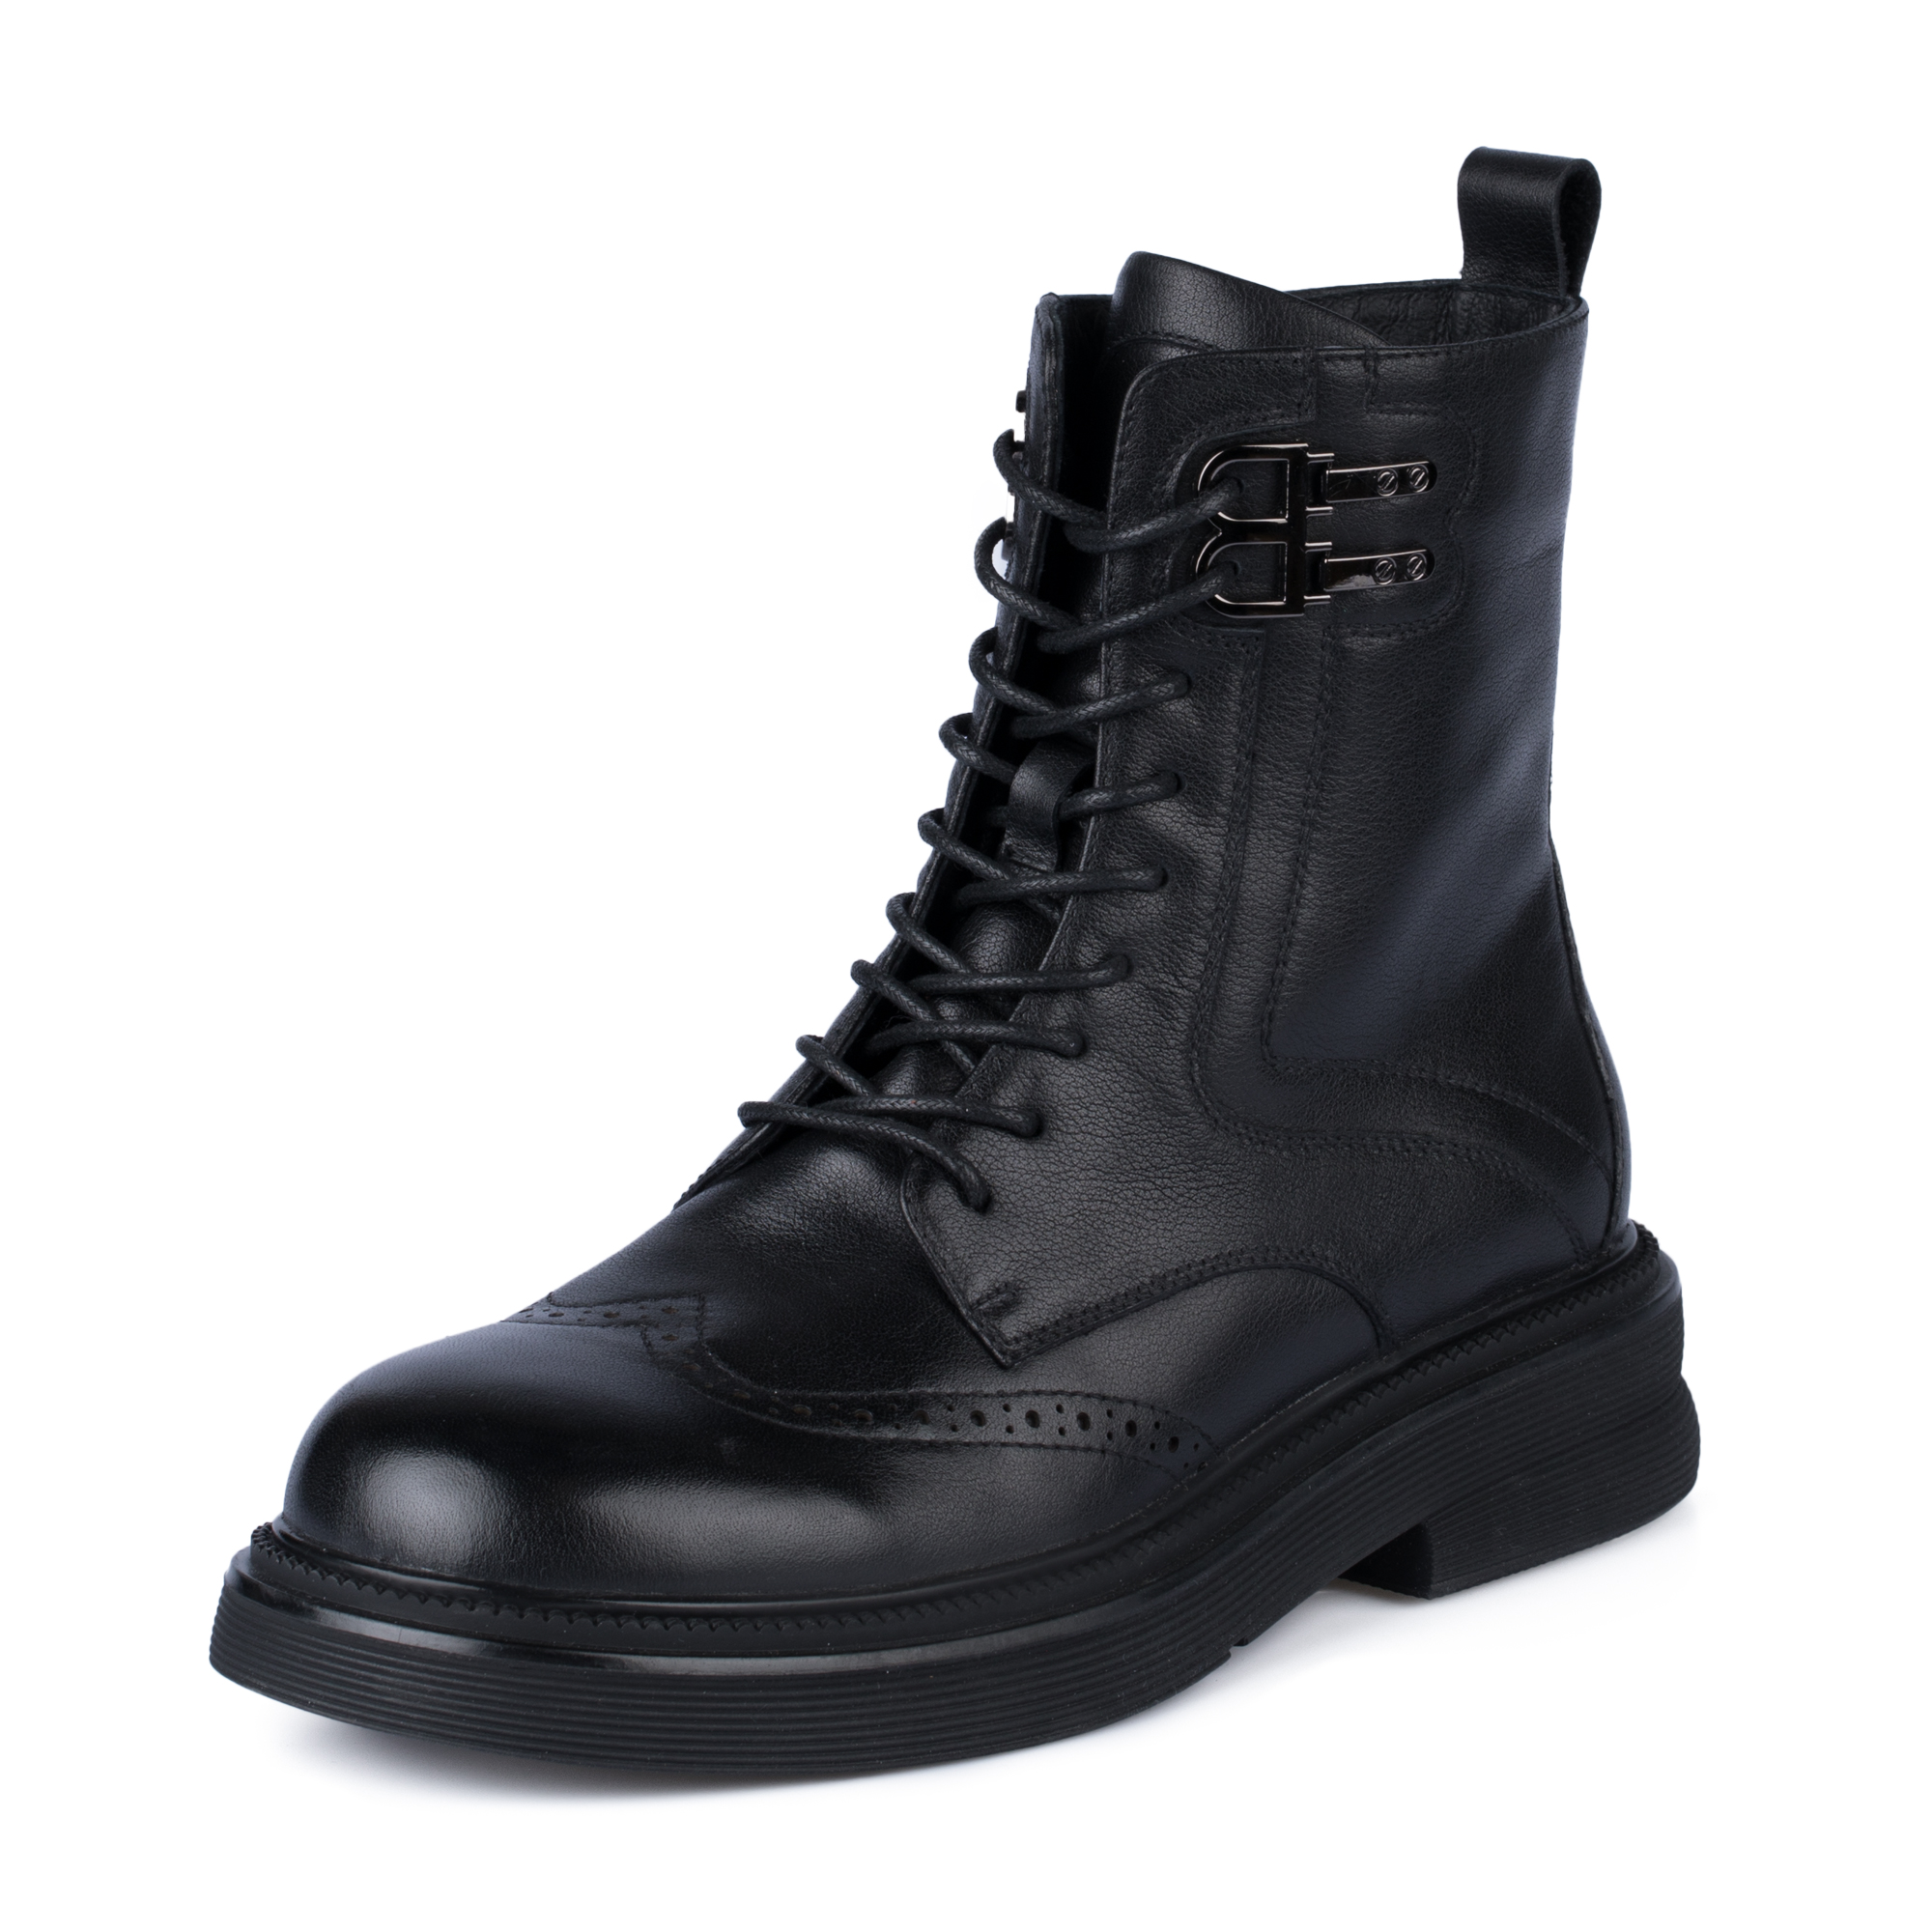 Ботинки Thomas Munz 058-999B-21022, цвет черный, размер 38 - фото 2